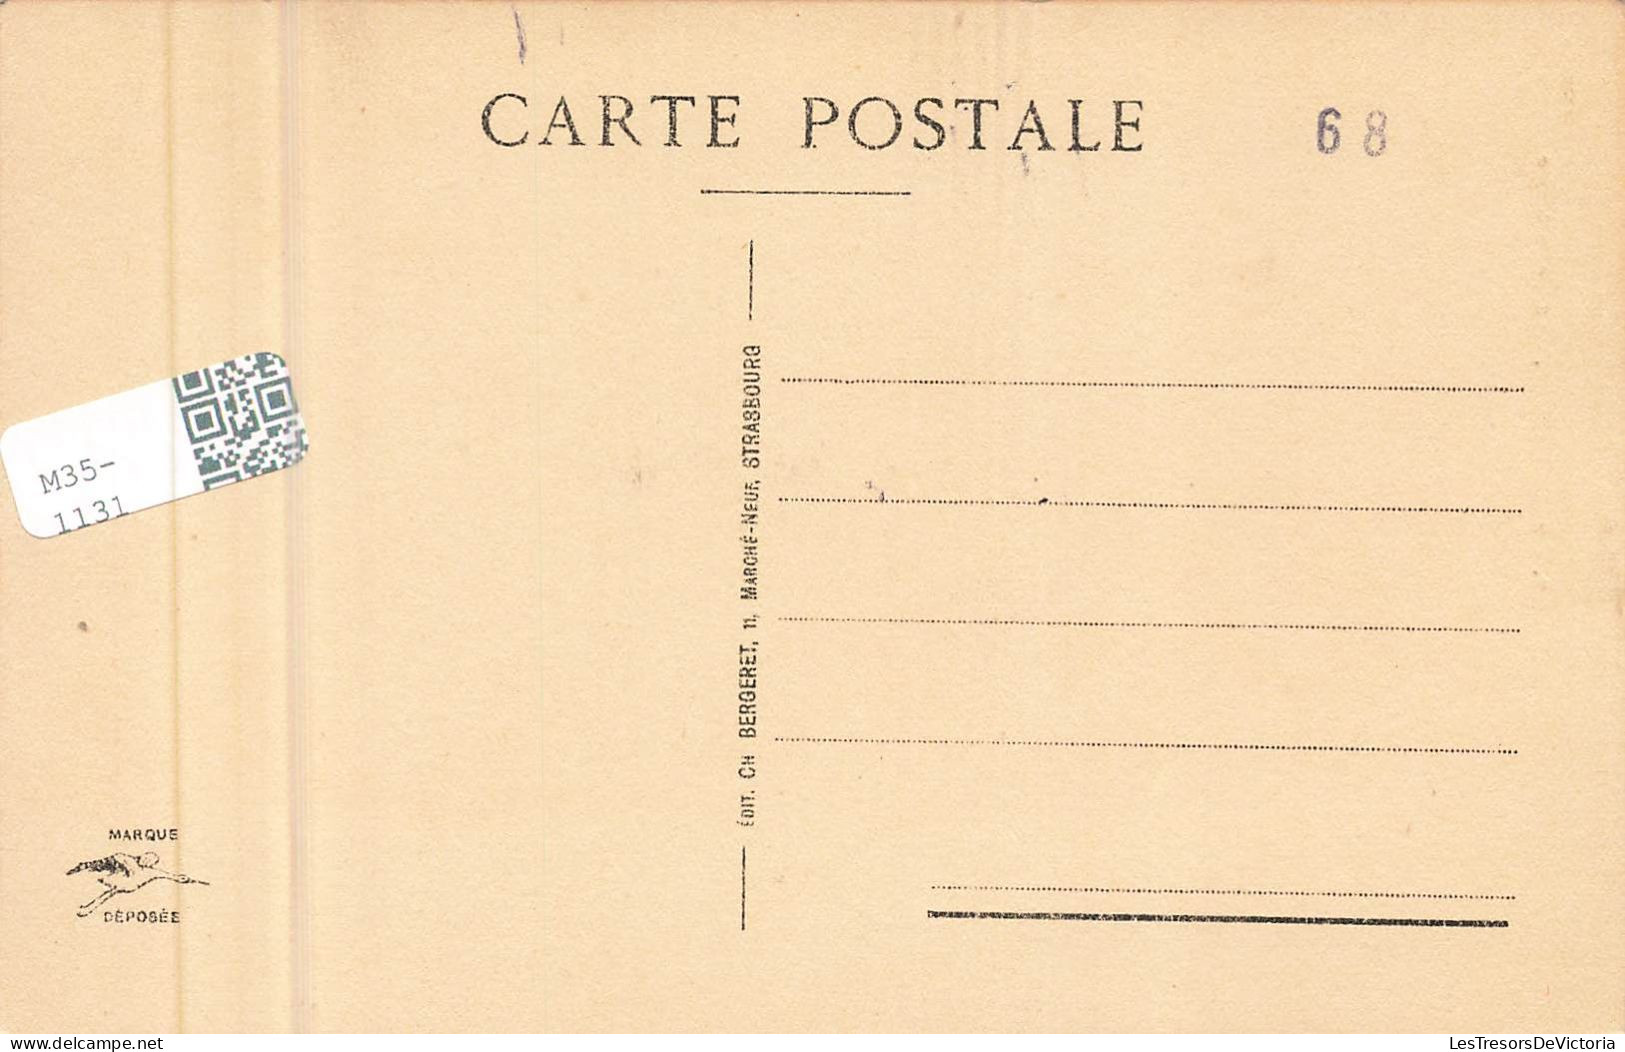 FRANCE - Riquewihr - La Porte Haute - Carte Postale Ancienne - Riquewihr